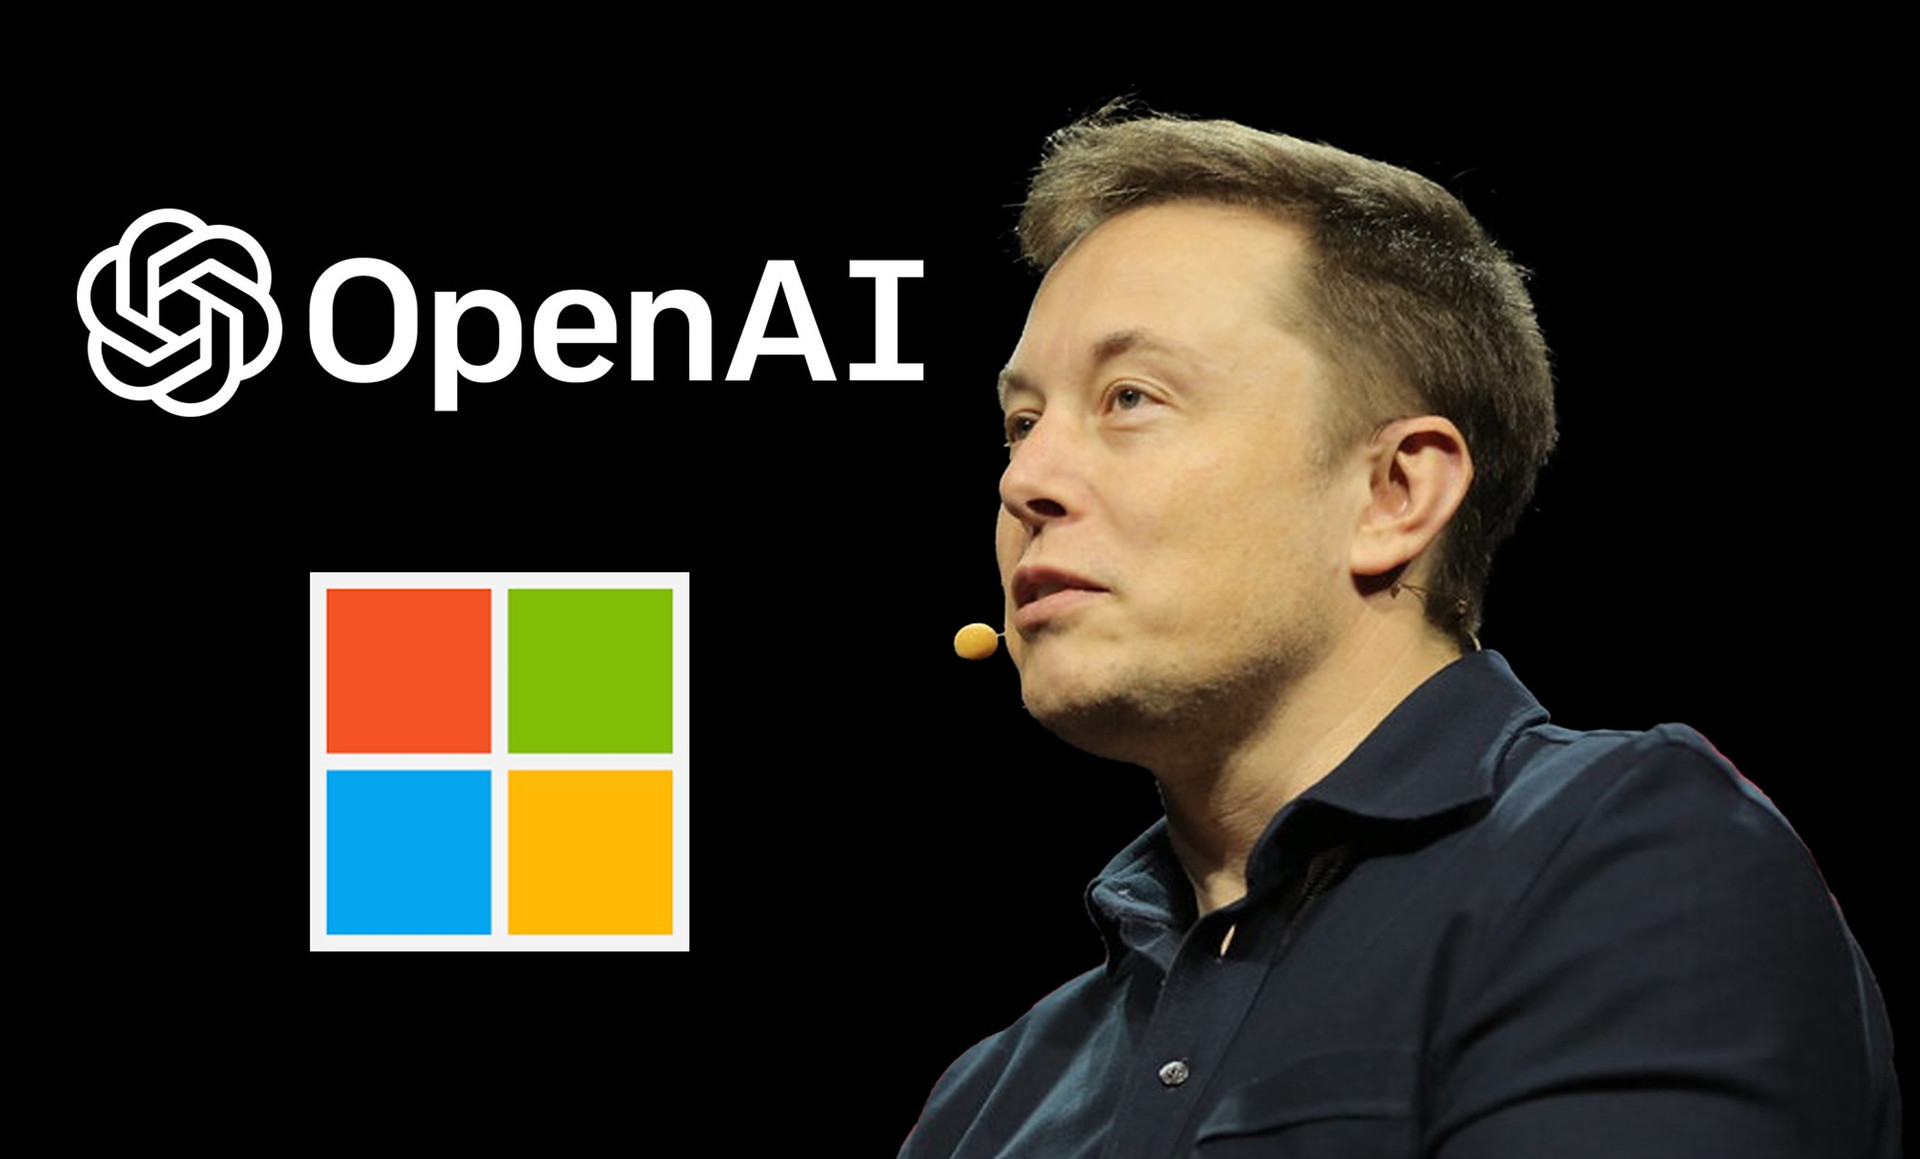 Elon Musk chỉ trích rằng OpenAI đang phát triển chệch đi mục tiêu ban đầu khi hợp tác với Microsoft. Ảnh: Mashable India.